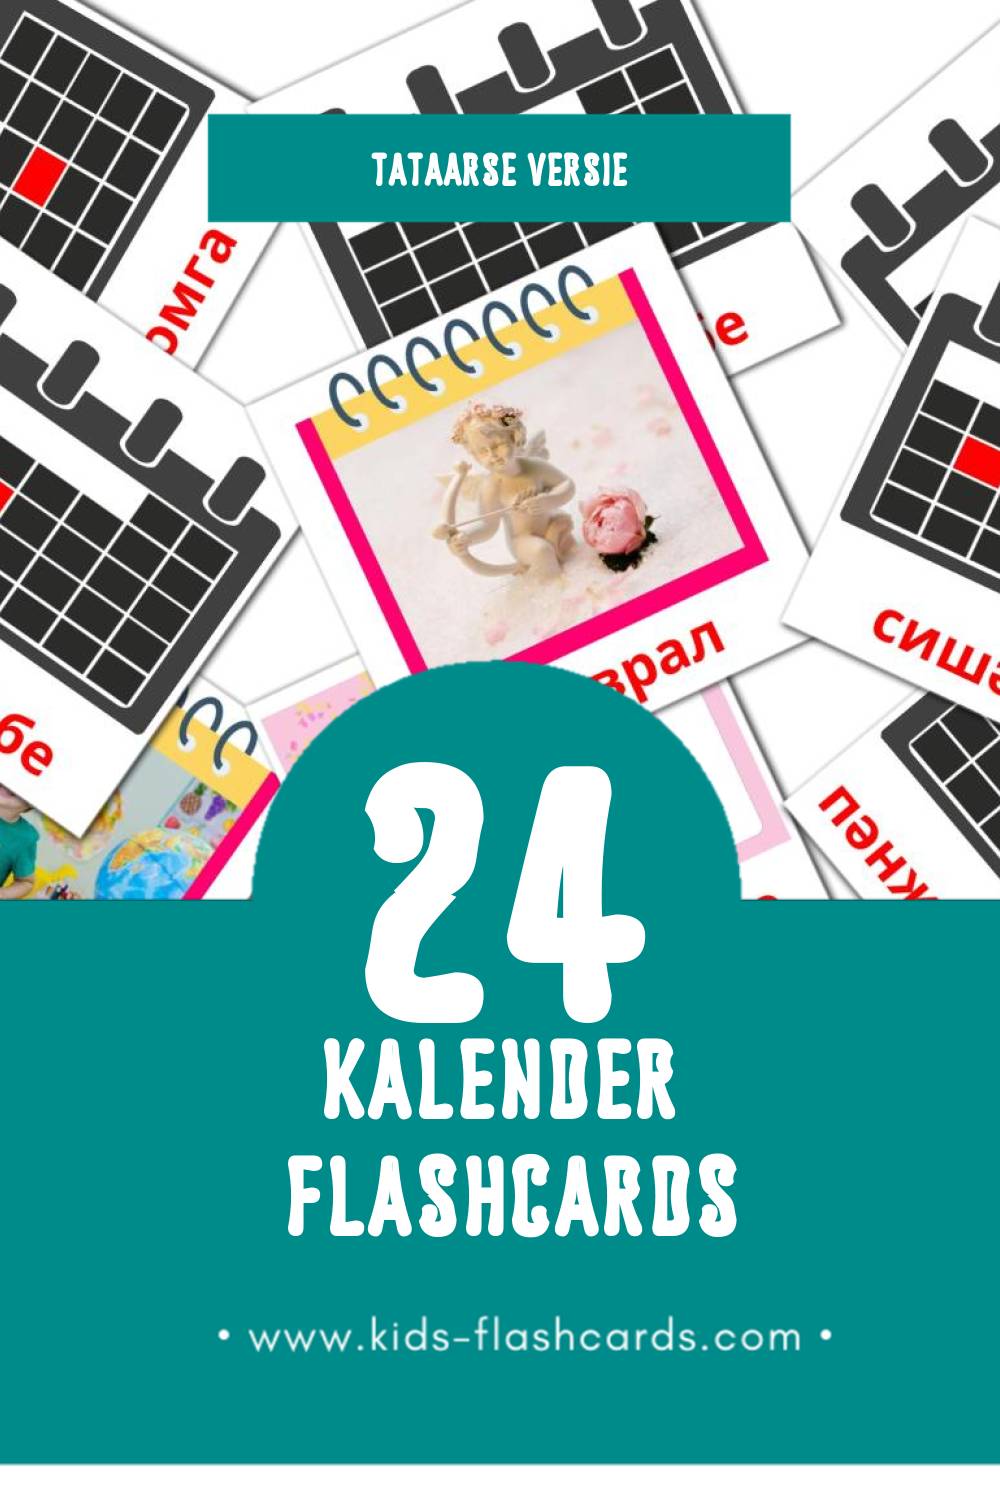 Visuele Календарь Flashcards voor Kleuters (24 kaarten in het Tataars)